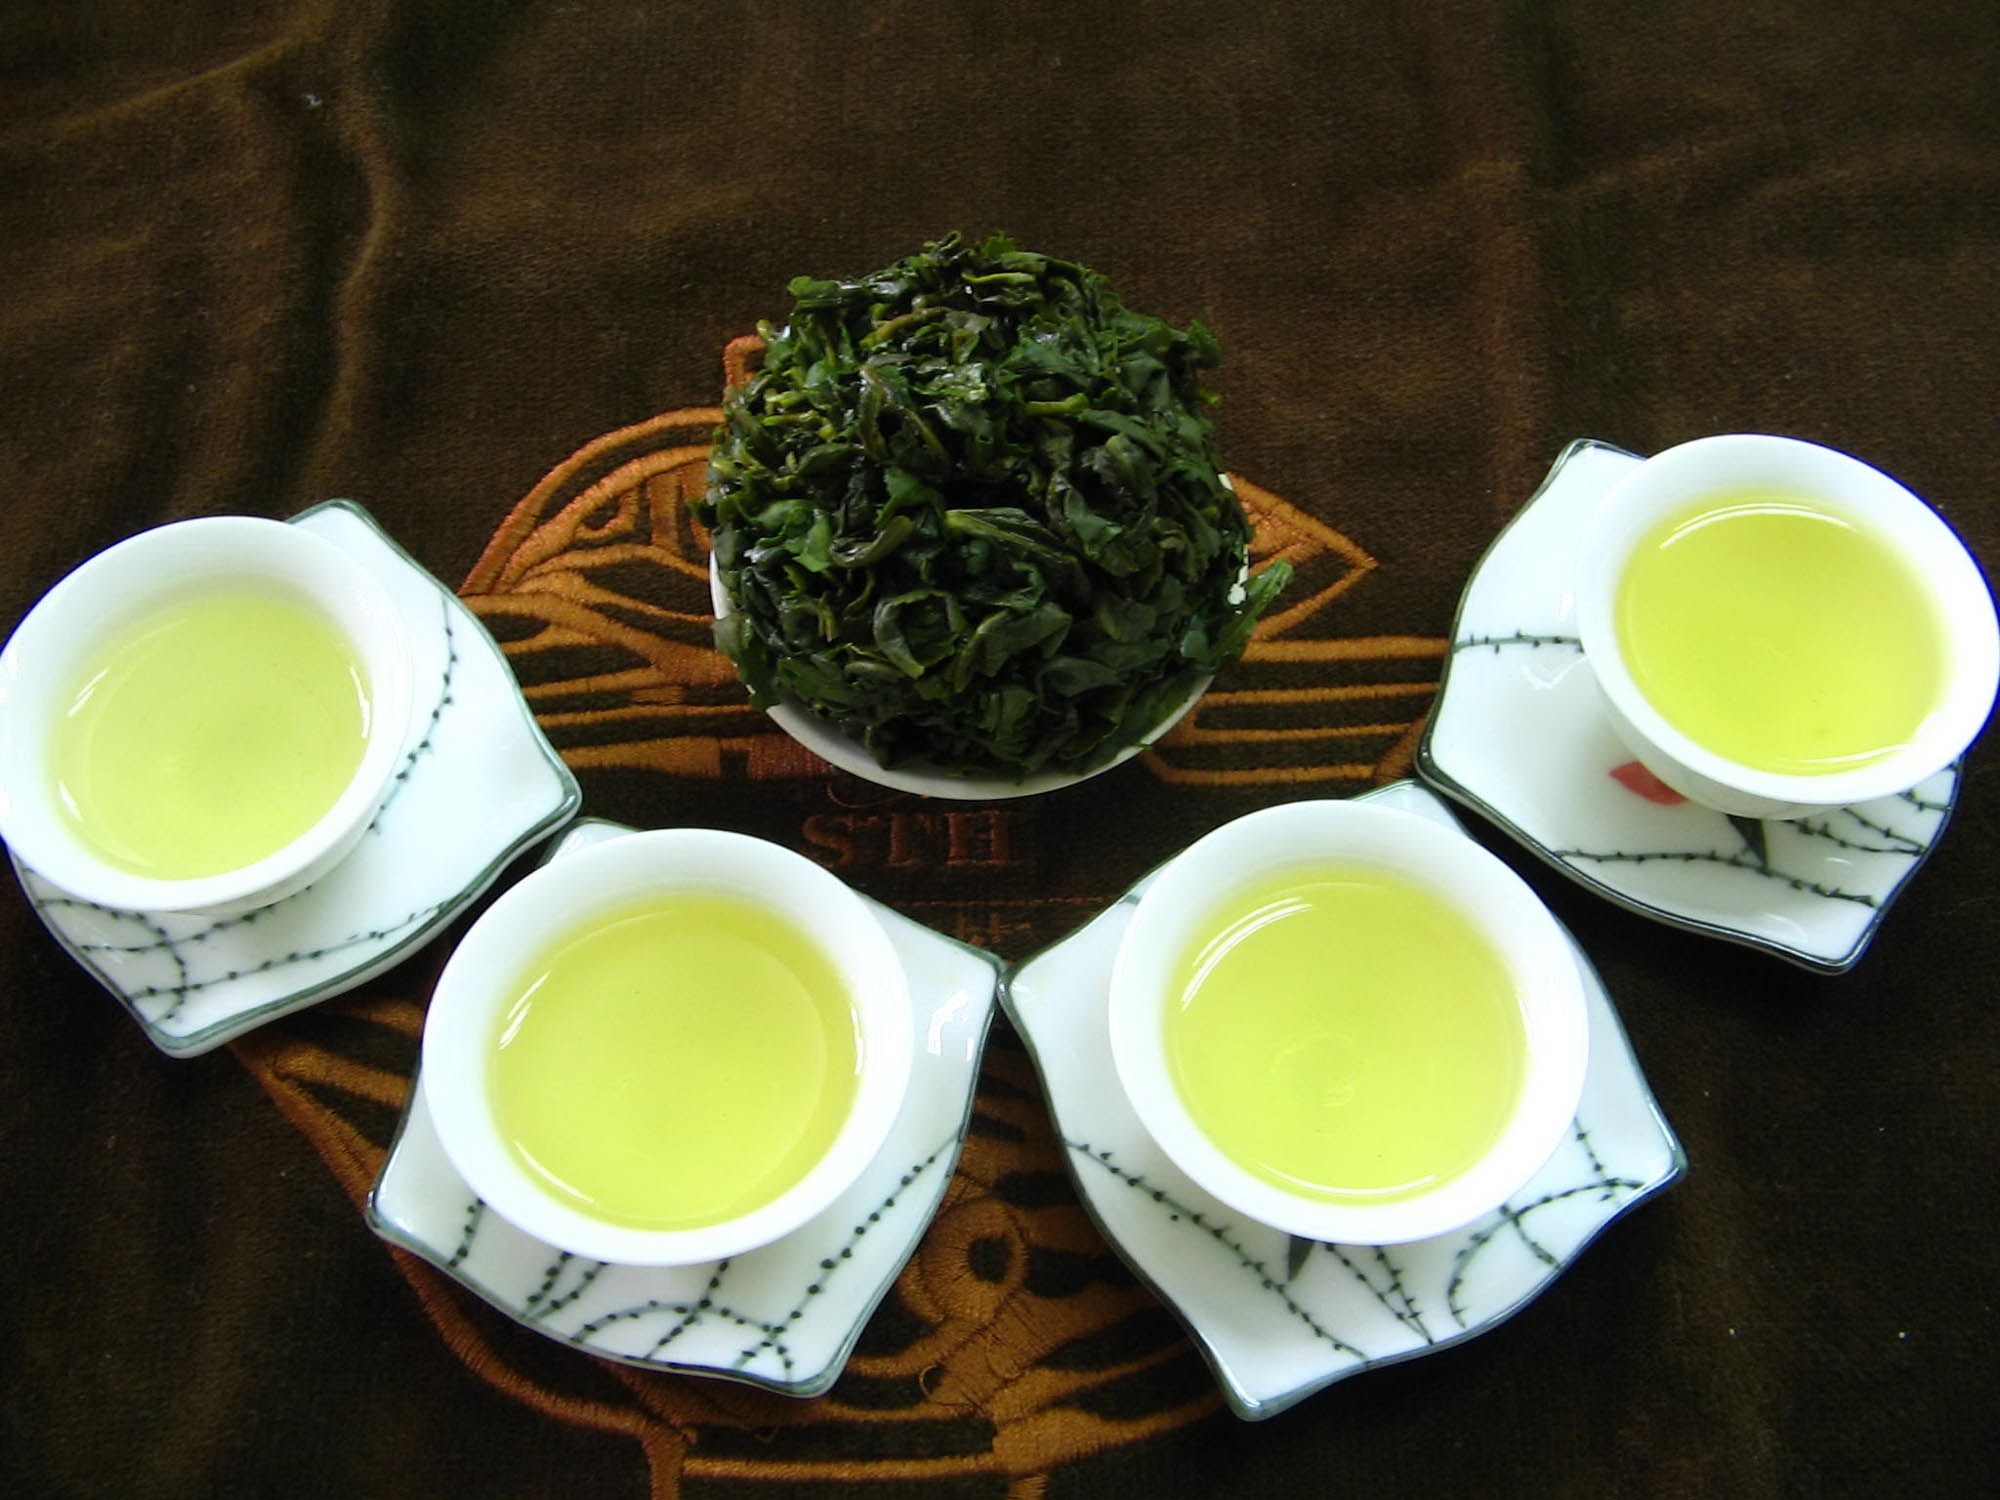 فوائد الشاي الصيني للتنحيف